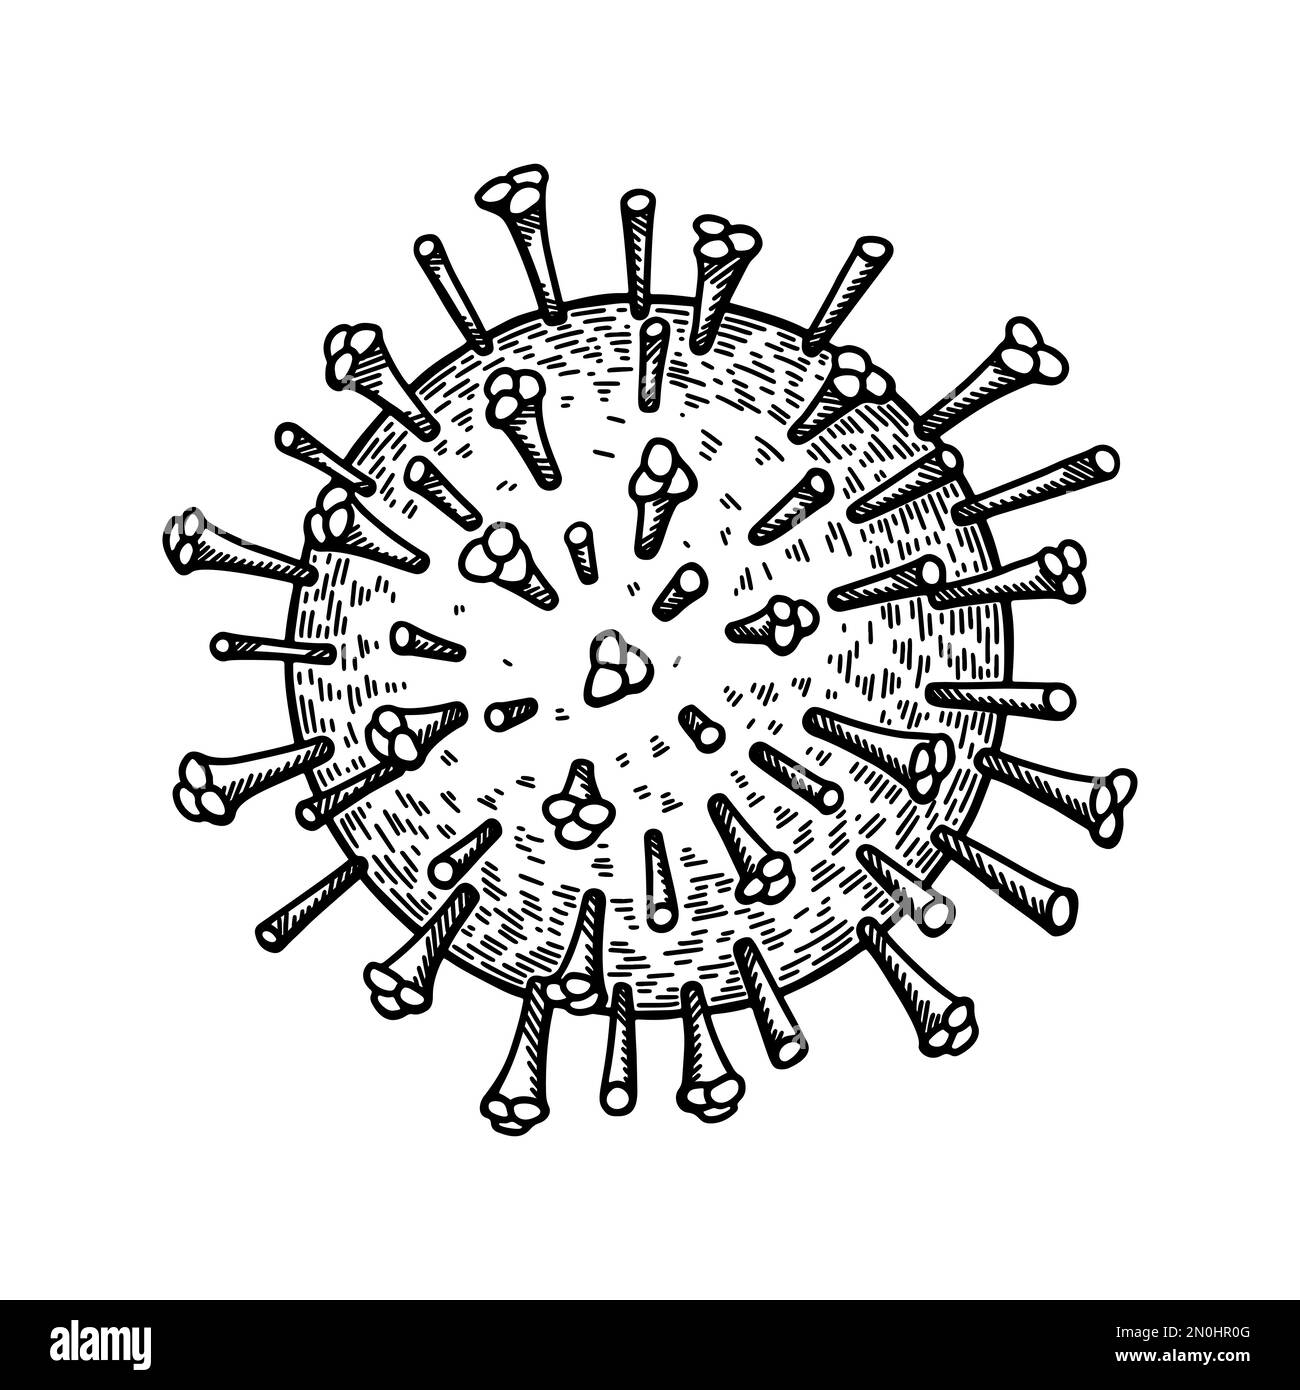 Virus dell'influenza isolato su sfondo bianco. Disegno a mano realistico dettagliato vettore scientifico illustrazione in stile di schizzo Illustrazione Vettoriale